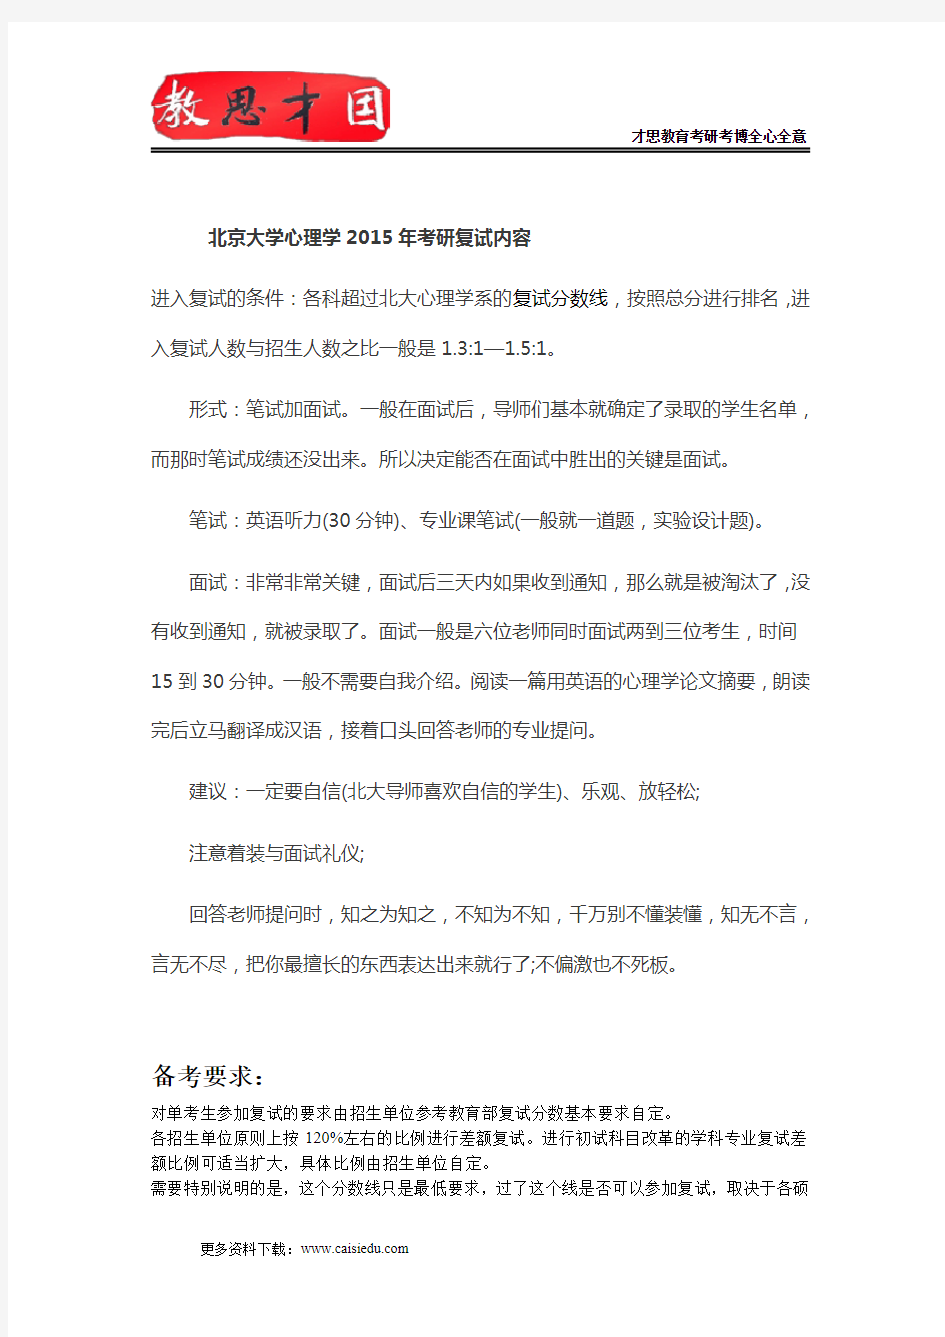 2015年北京大学心理学考研复试内容,考研复试参考书